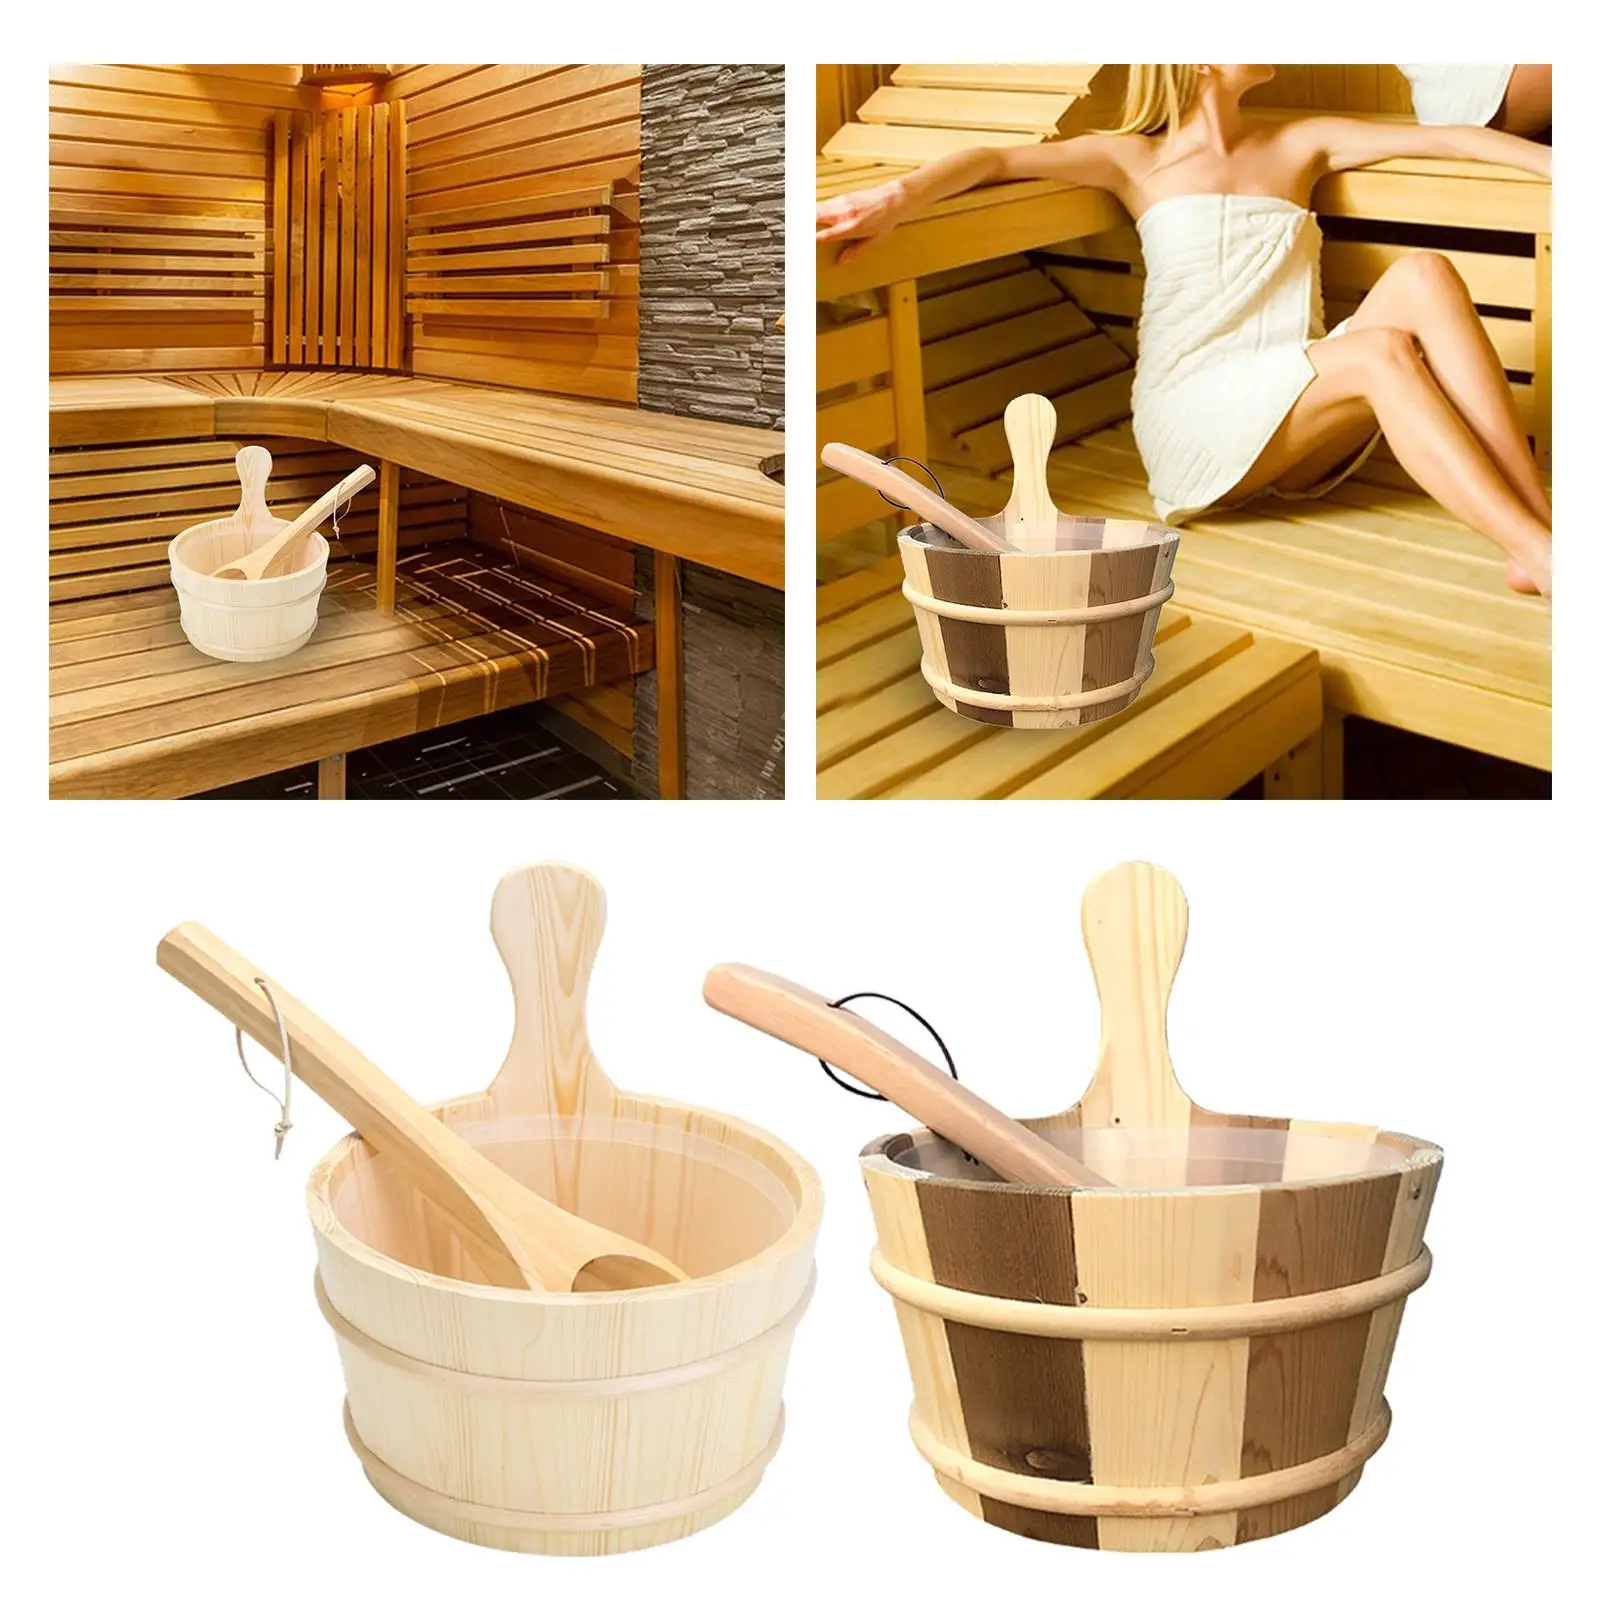 4L Sauna Barrel and Ladle, SPA Accessory, Wooden Hot Tub Barrel, SPA Steaming Bathroom Tool, Sauna Accessories